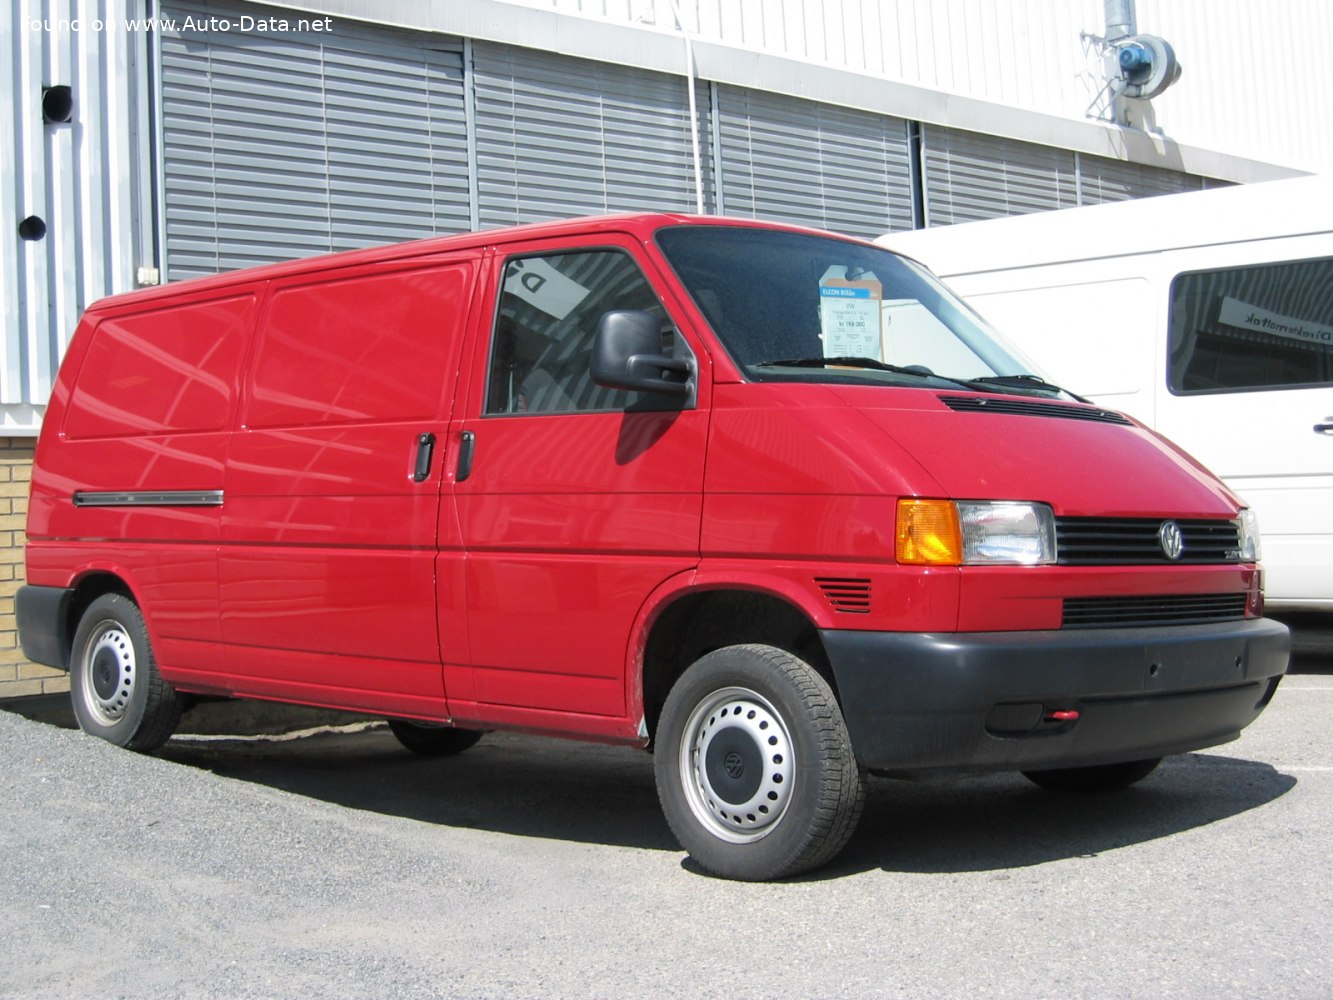 https://www.auto-data.net/images/f65/Volkswagen-Transporter-T4-Panel-Van.jpg